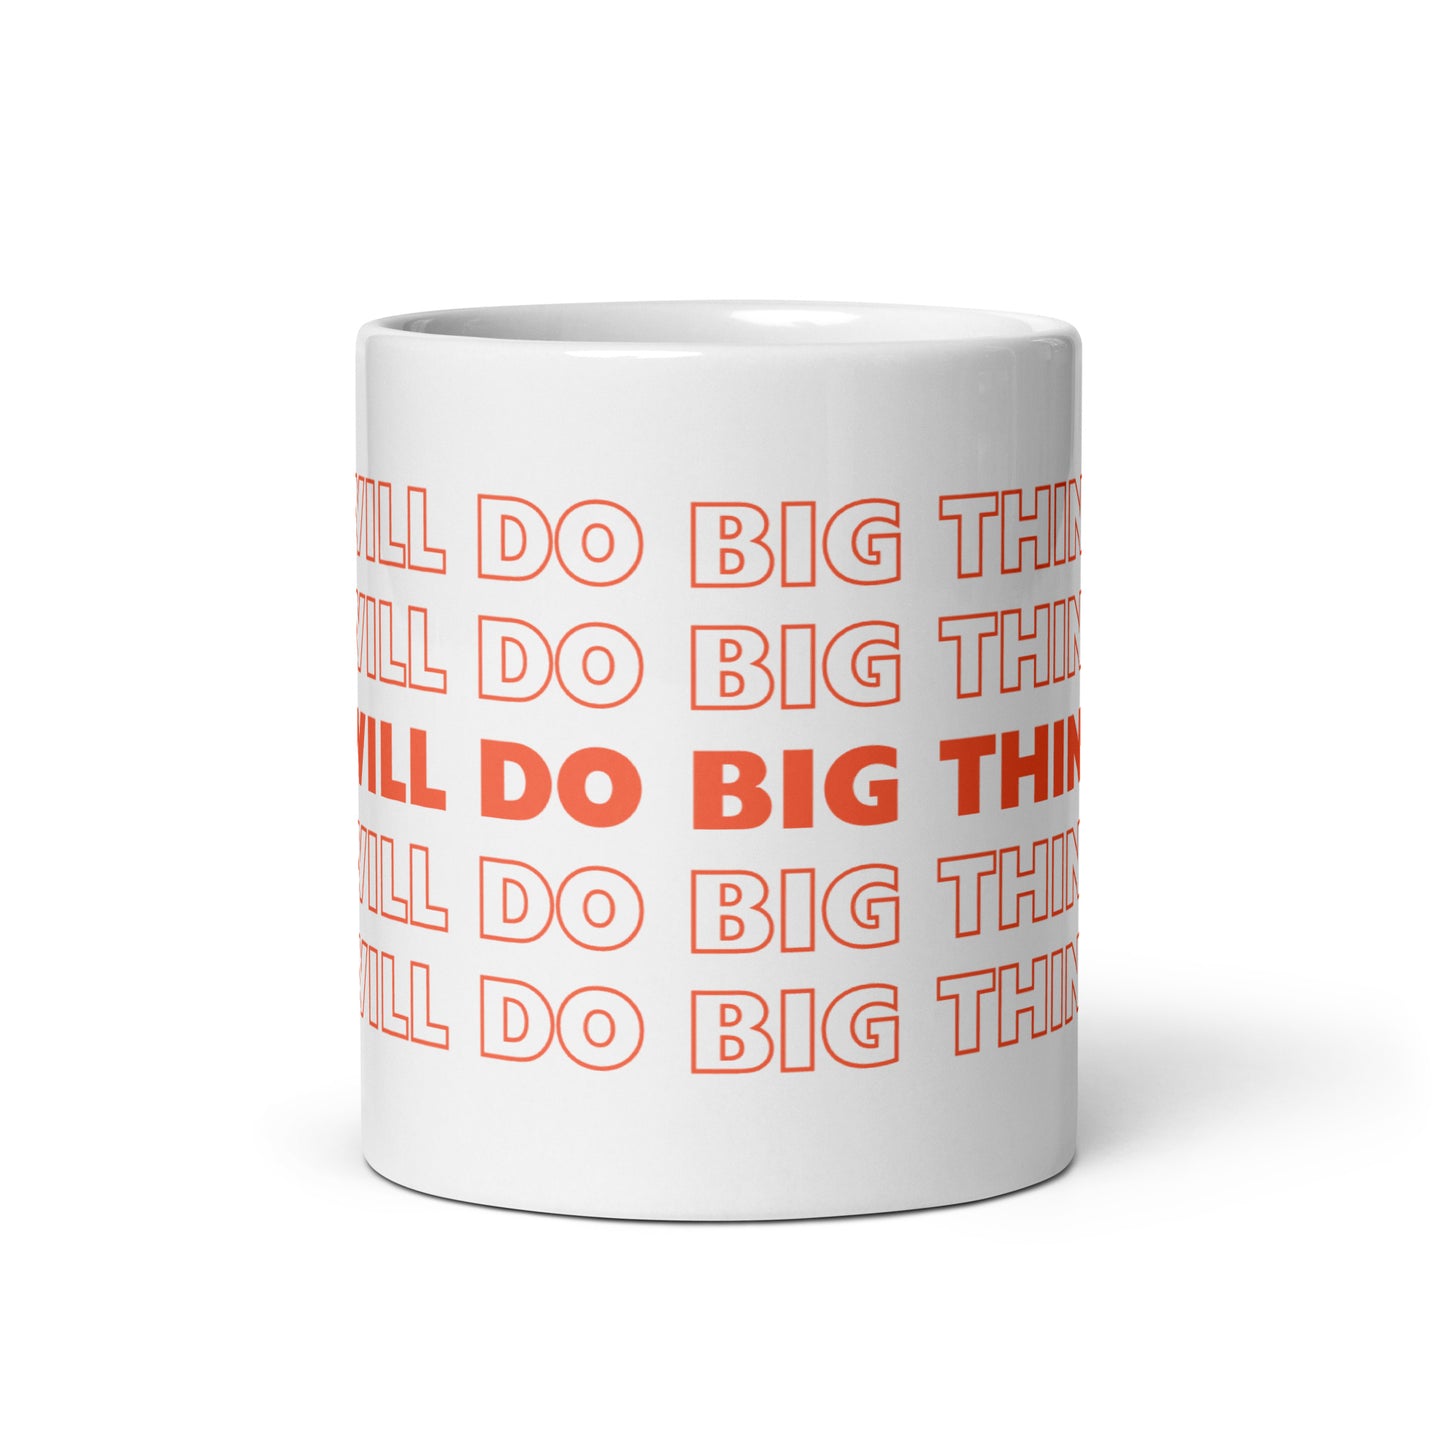 I WILL DO BIG THINGS Coffee Mug